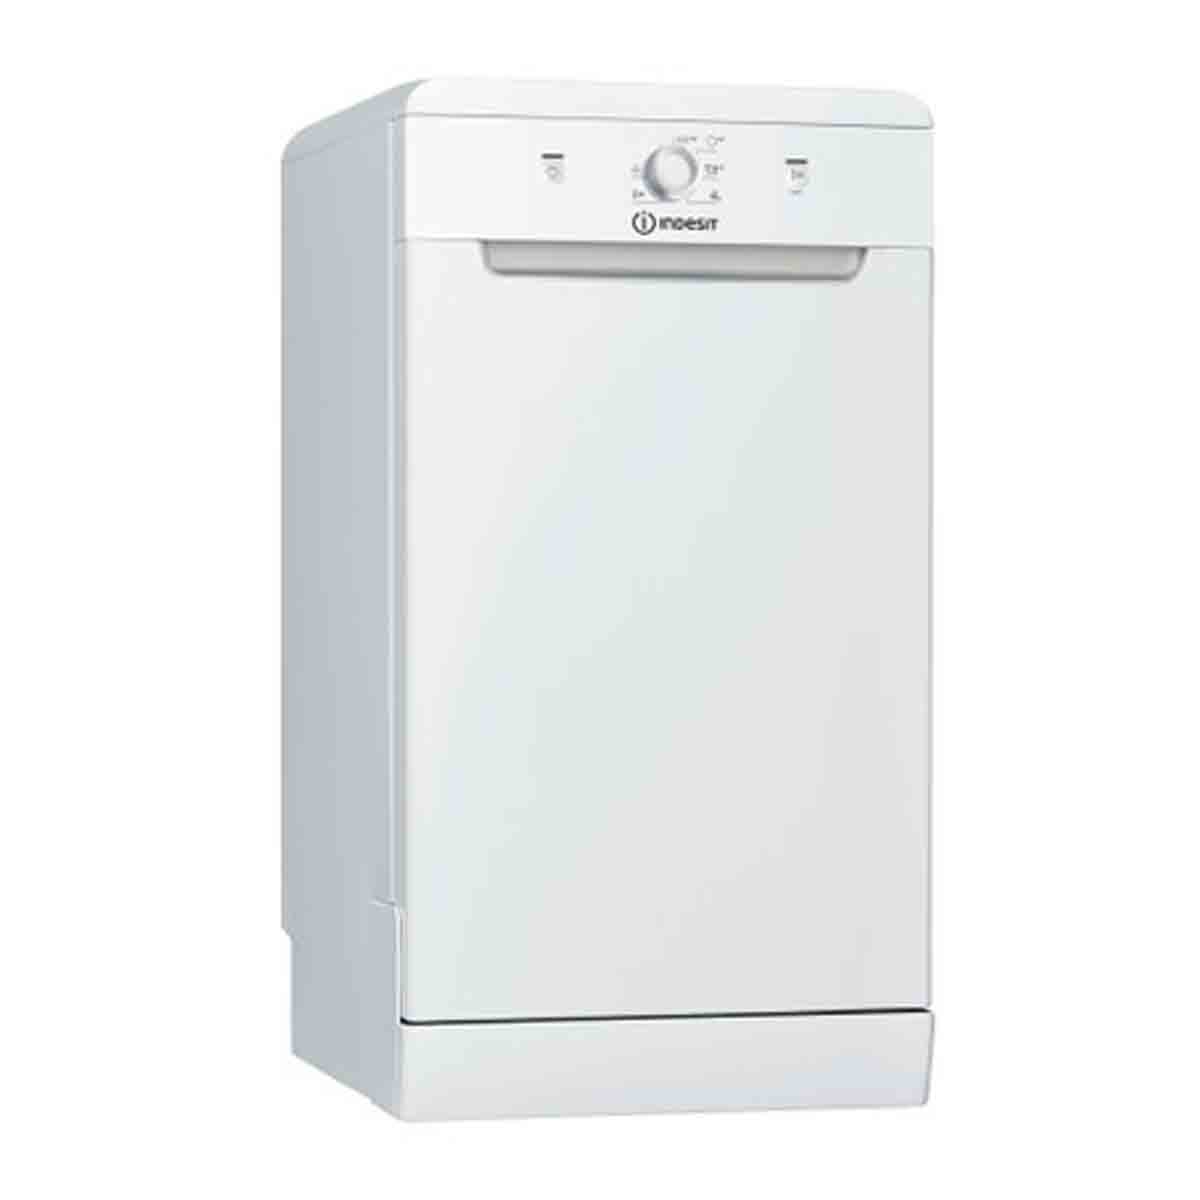 Indesit DSFE 1B10 UK N Dishwasher - White